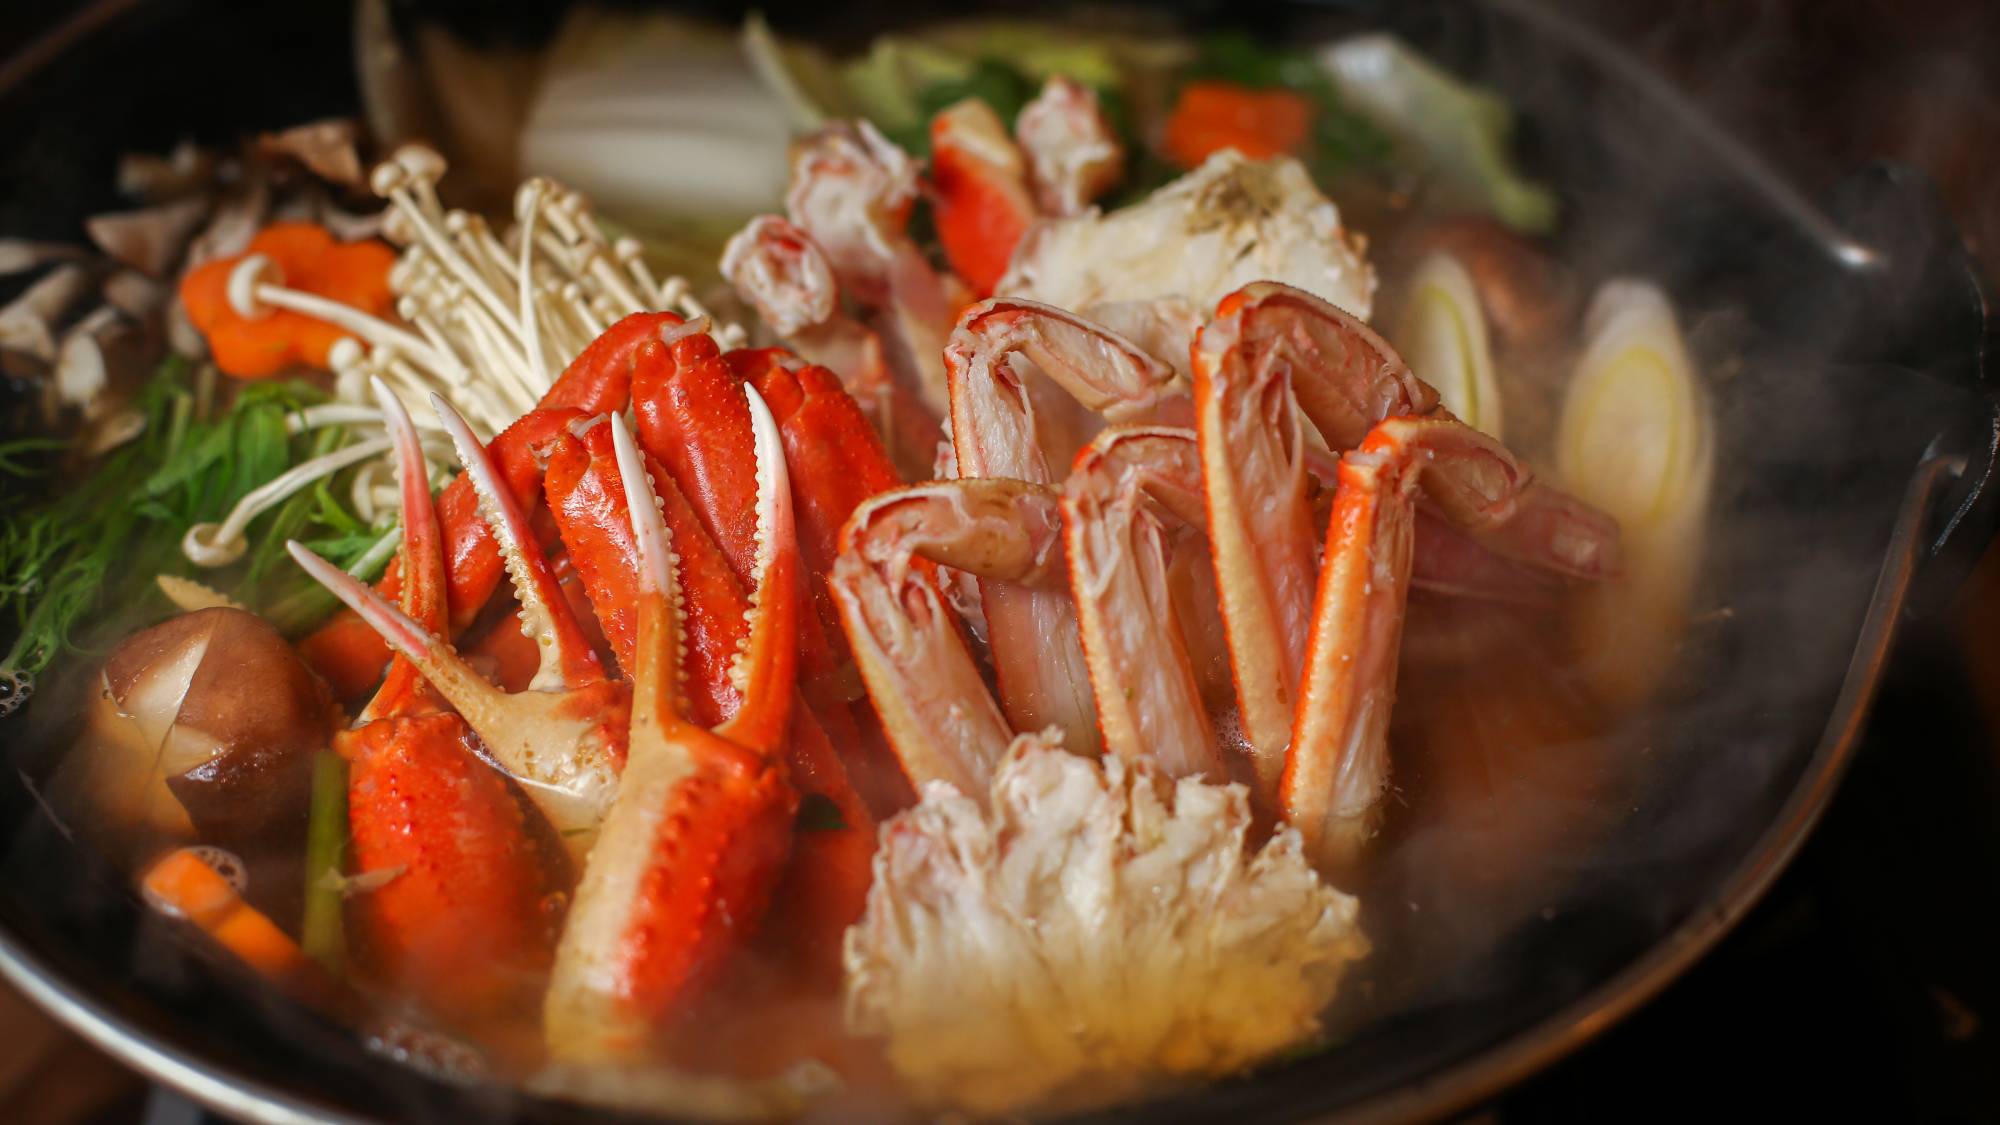 ・【カニ鍋満喫プラン 料理一例】あったかい蟹鍋をお楽しみください。